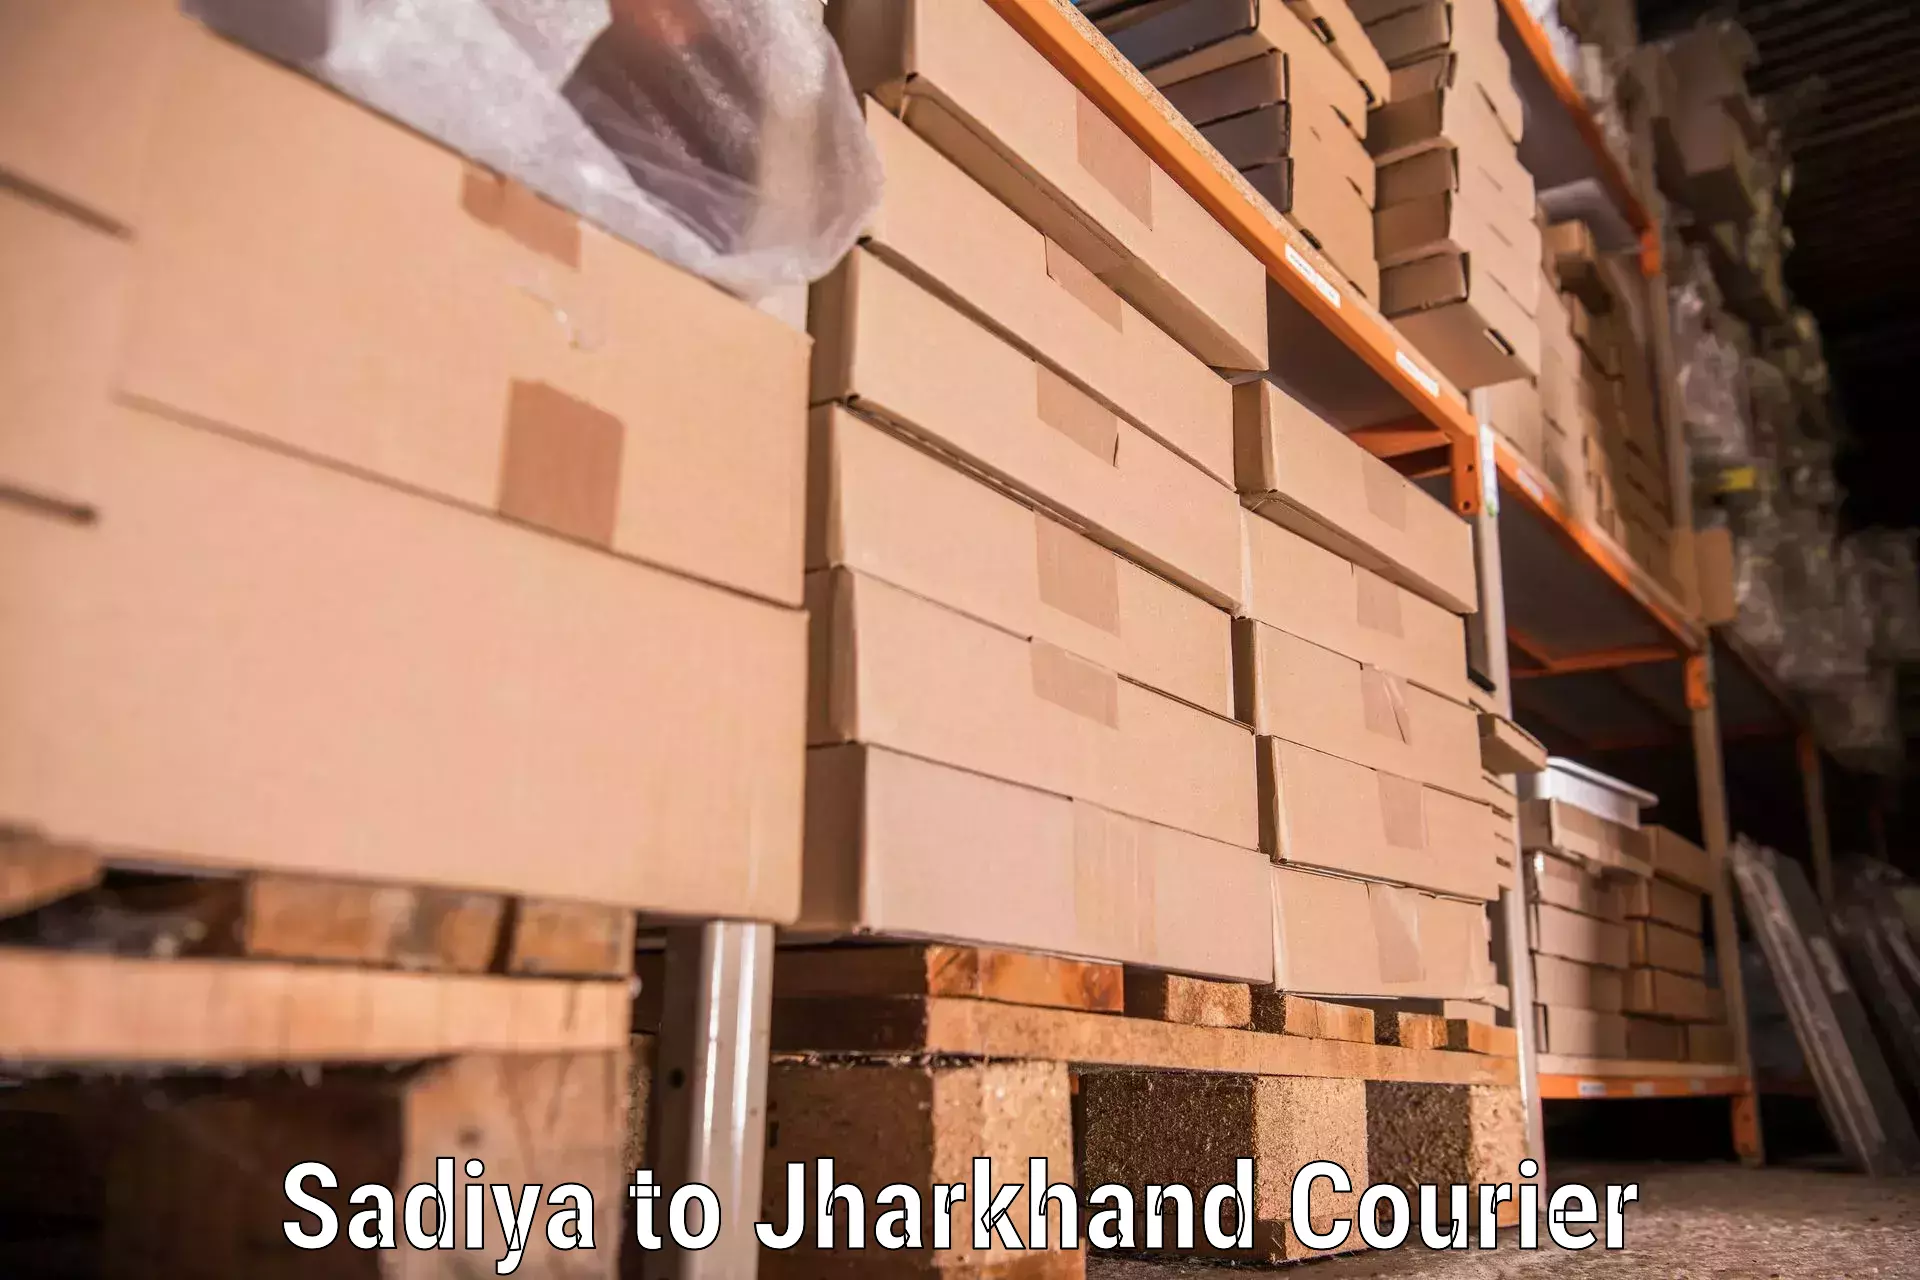 Moving and storage services in Sadiya to Bara Boarijor